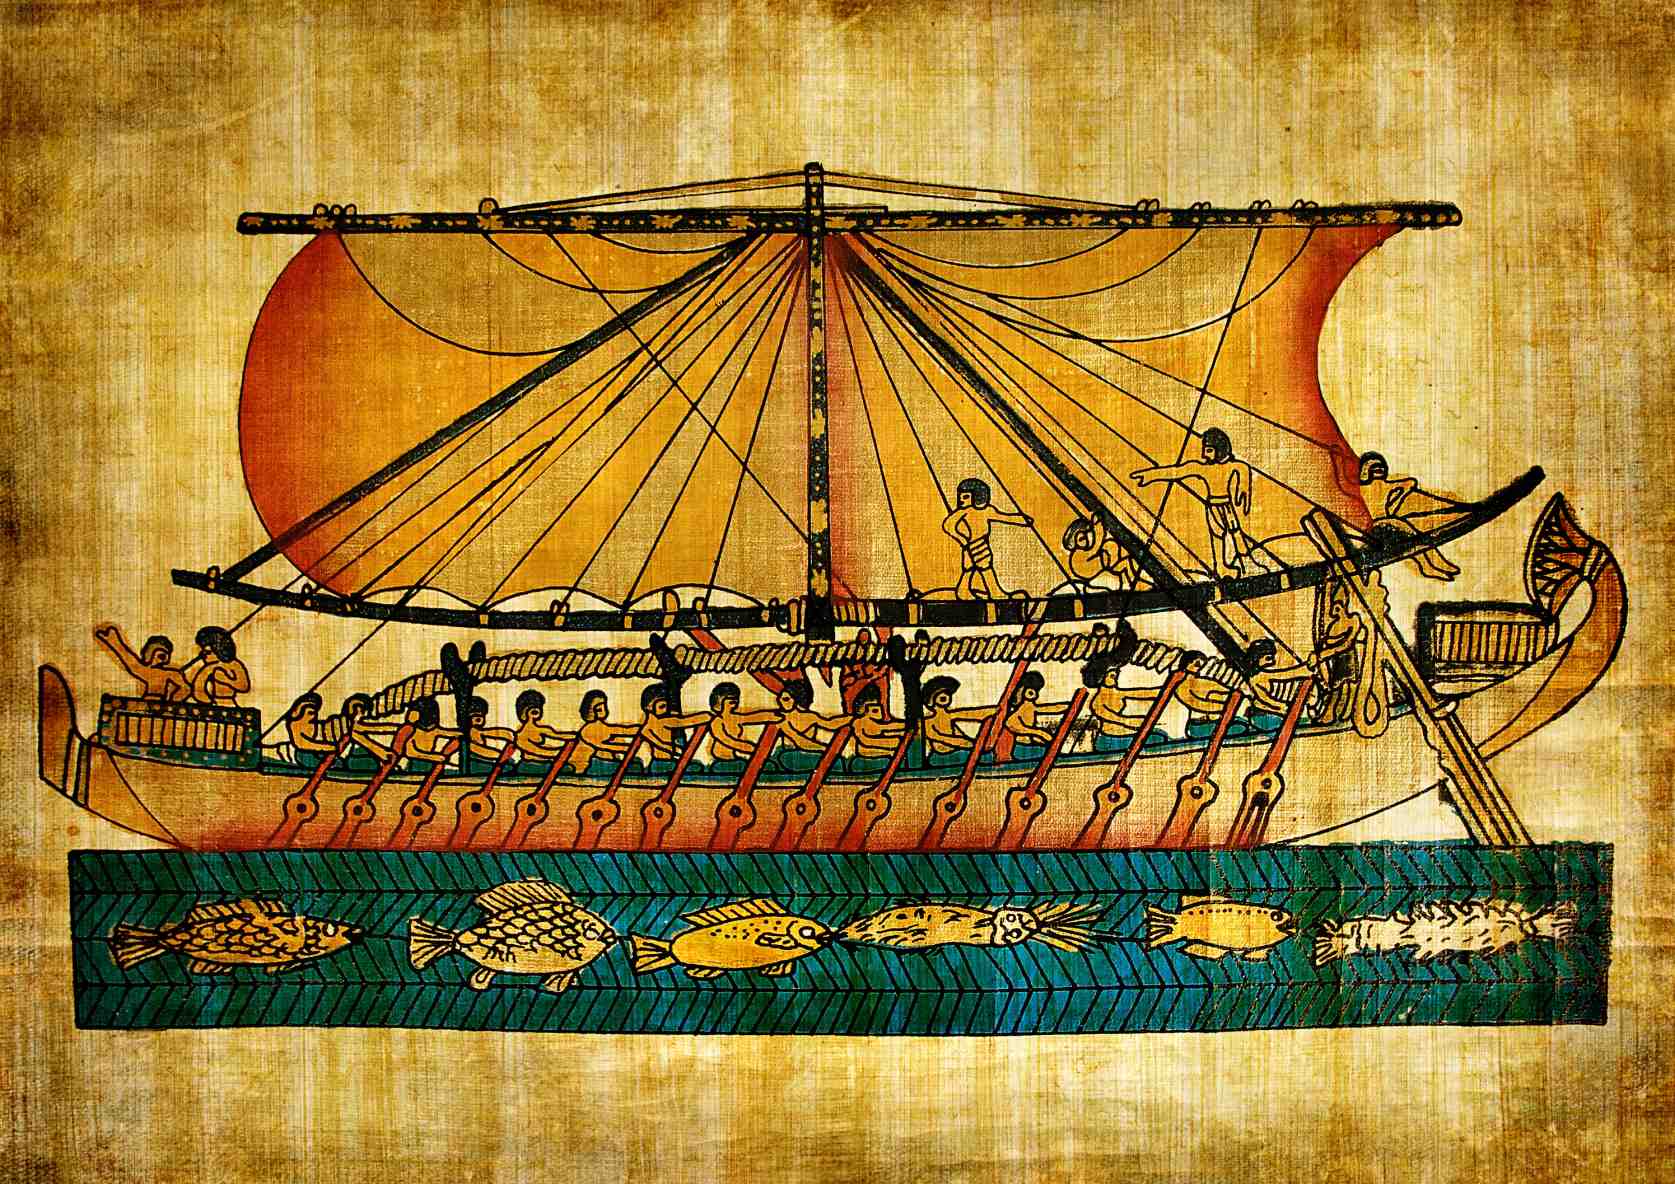 Dongeng The Ship-Wrecked Sailor mangrupakeun téks tanggal ka Karajaan Tengah Mesir (2040-1782 SM).